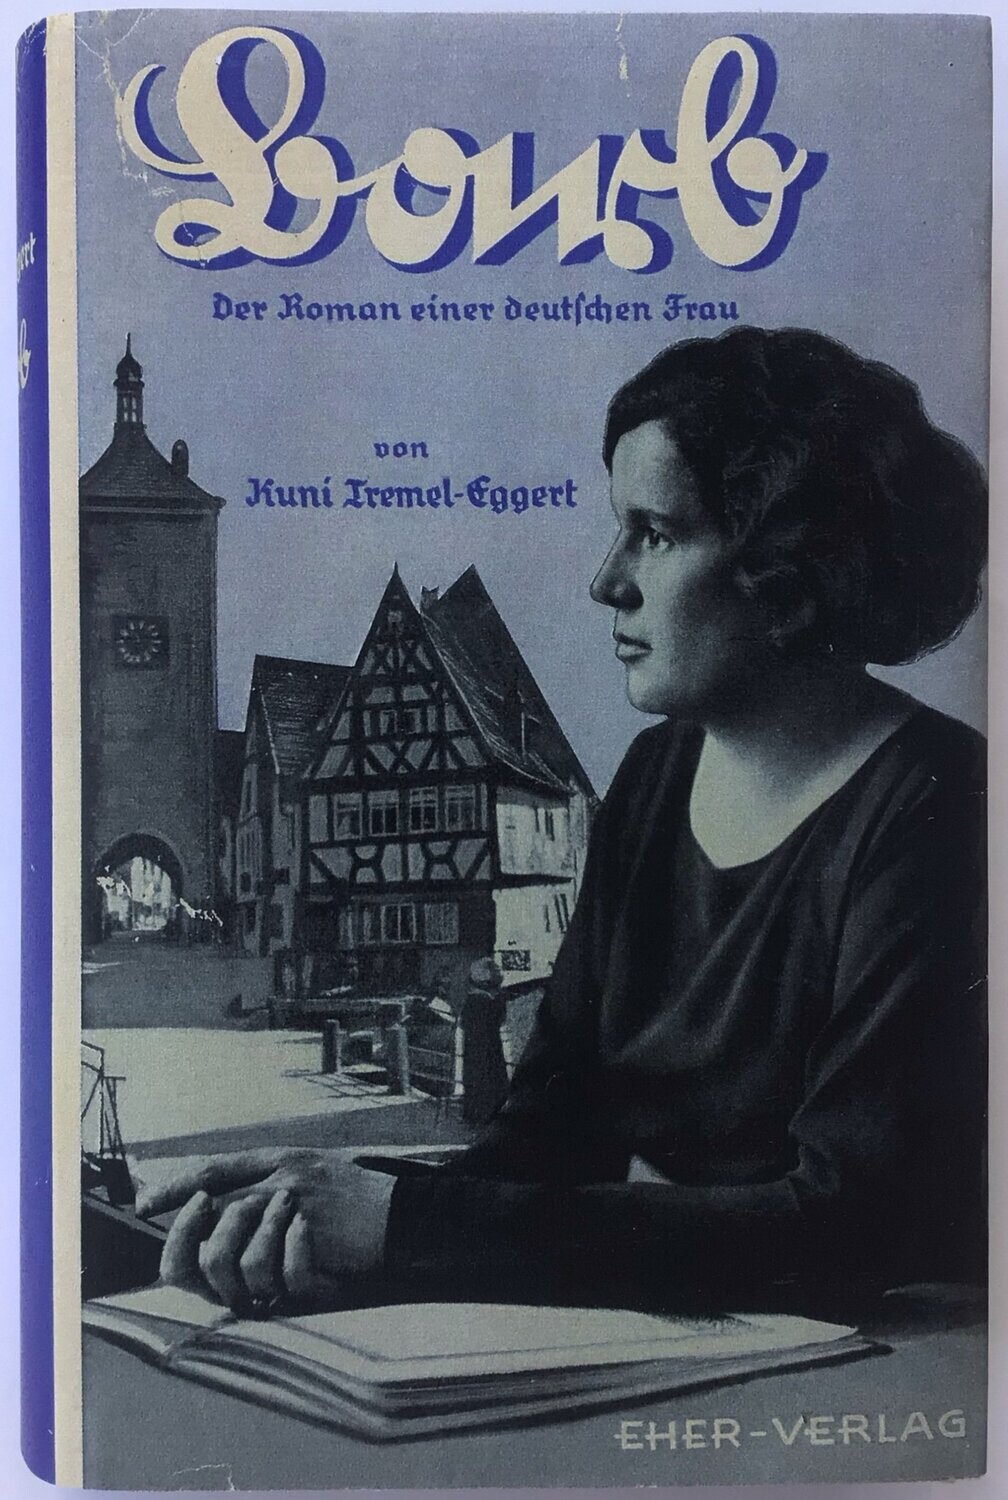 Tremel-Eggert: Barb - Der Roman einer deutschen Frau - Ganzleinenausgabe (45. Auflage) aus dem Jahr 1940 mit Schutzumschlag (Kopie)